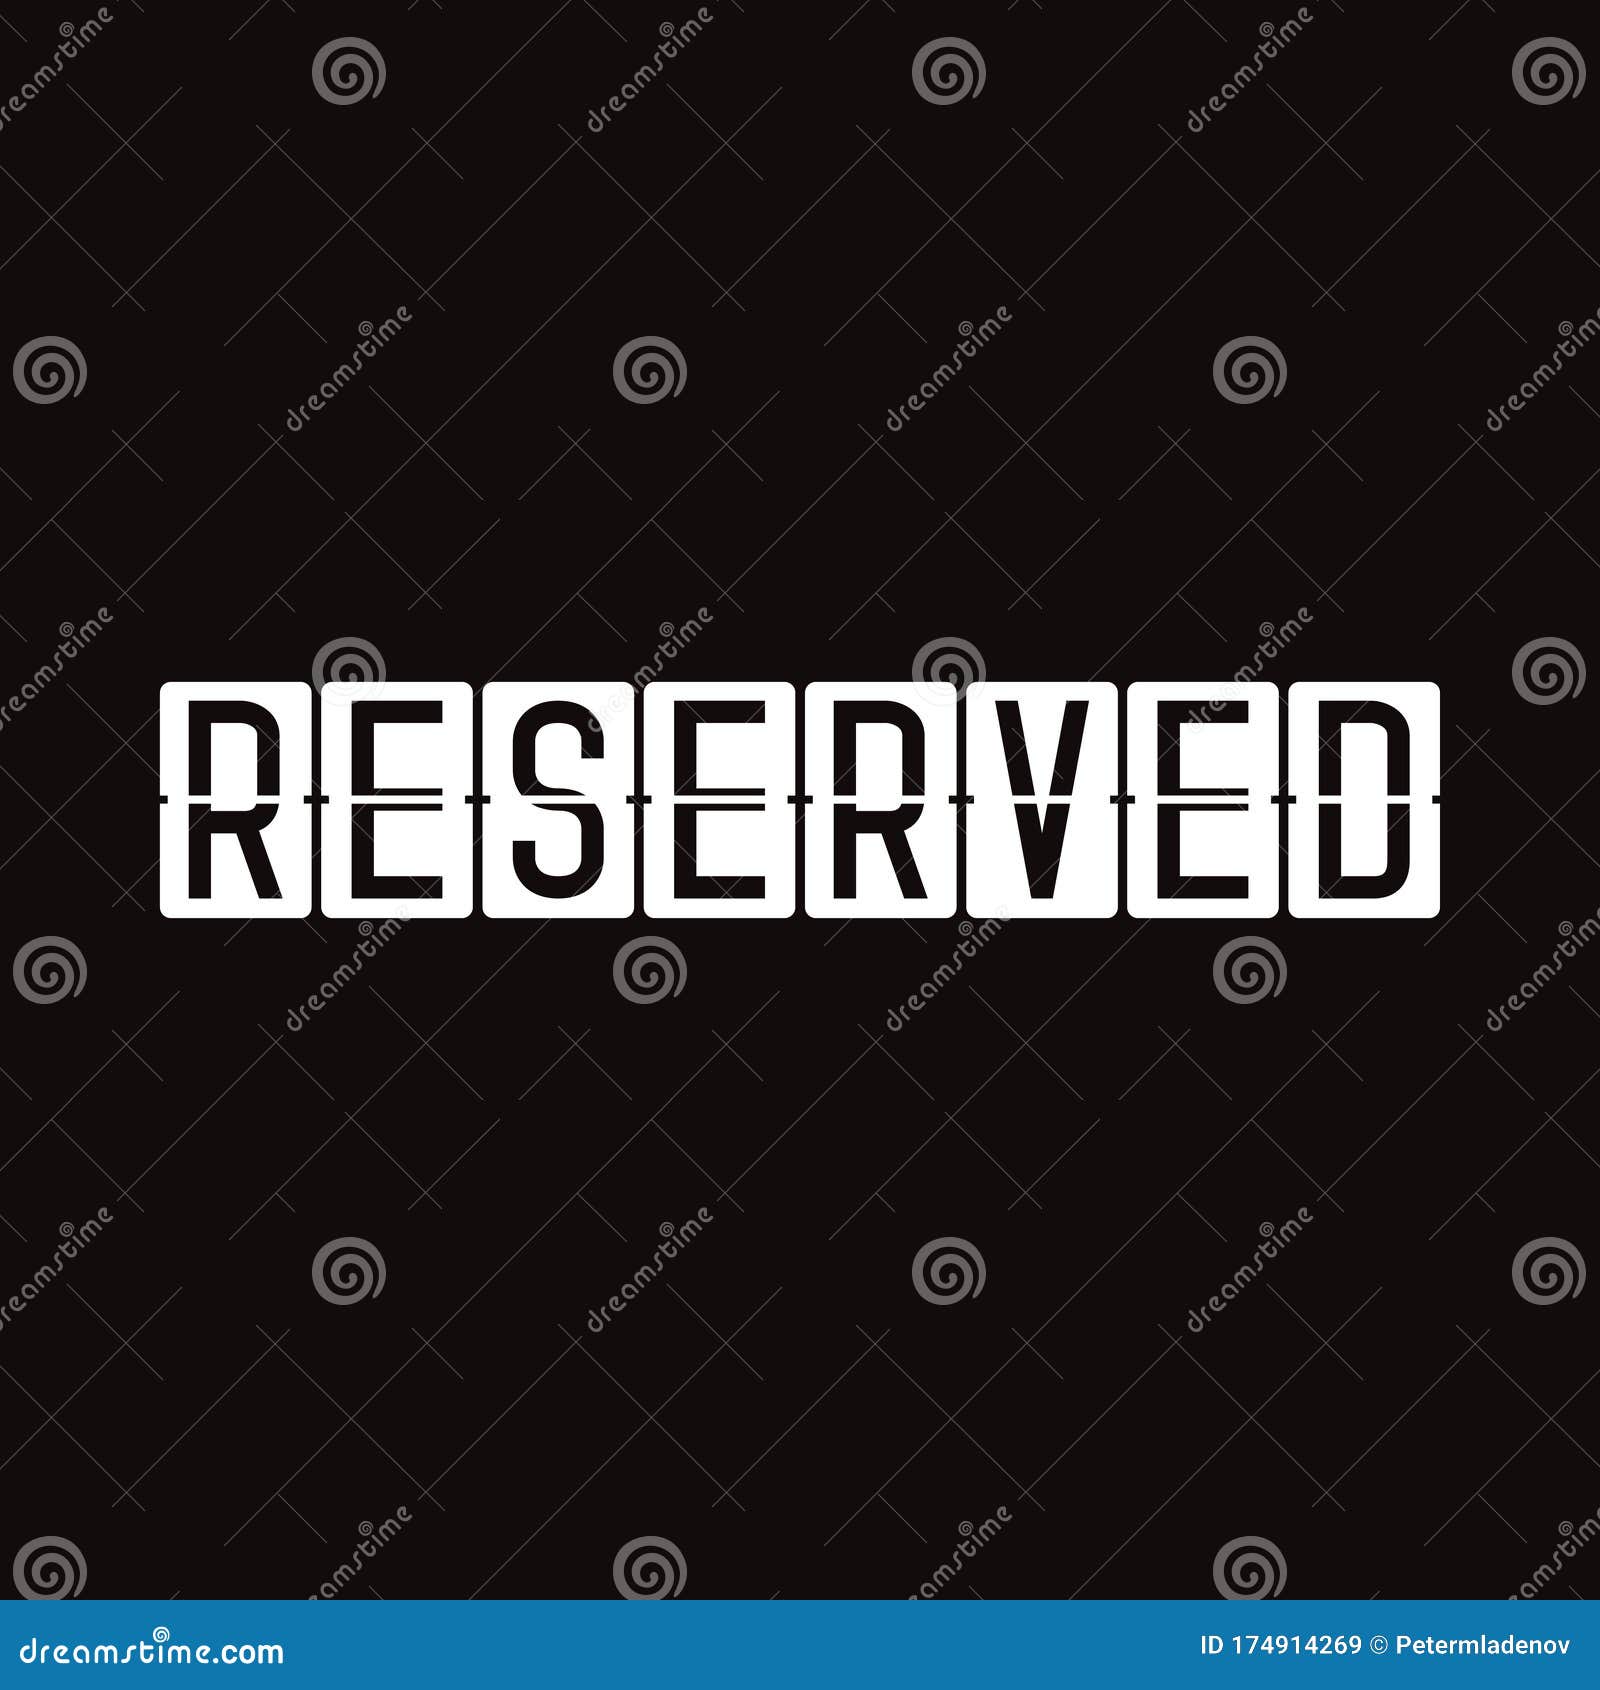 reserved in display board style solari board, flightboard, flipboard